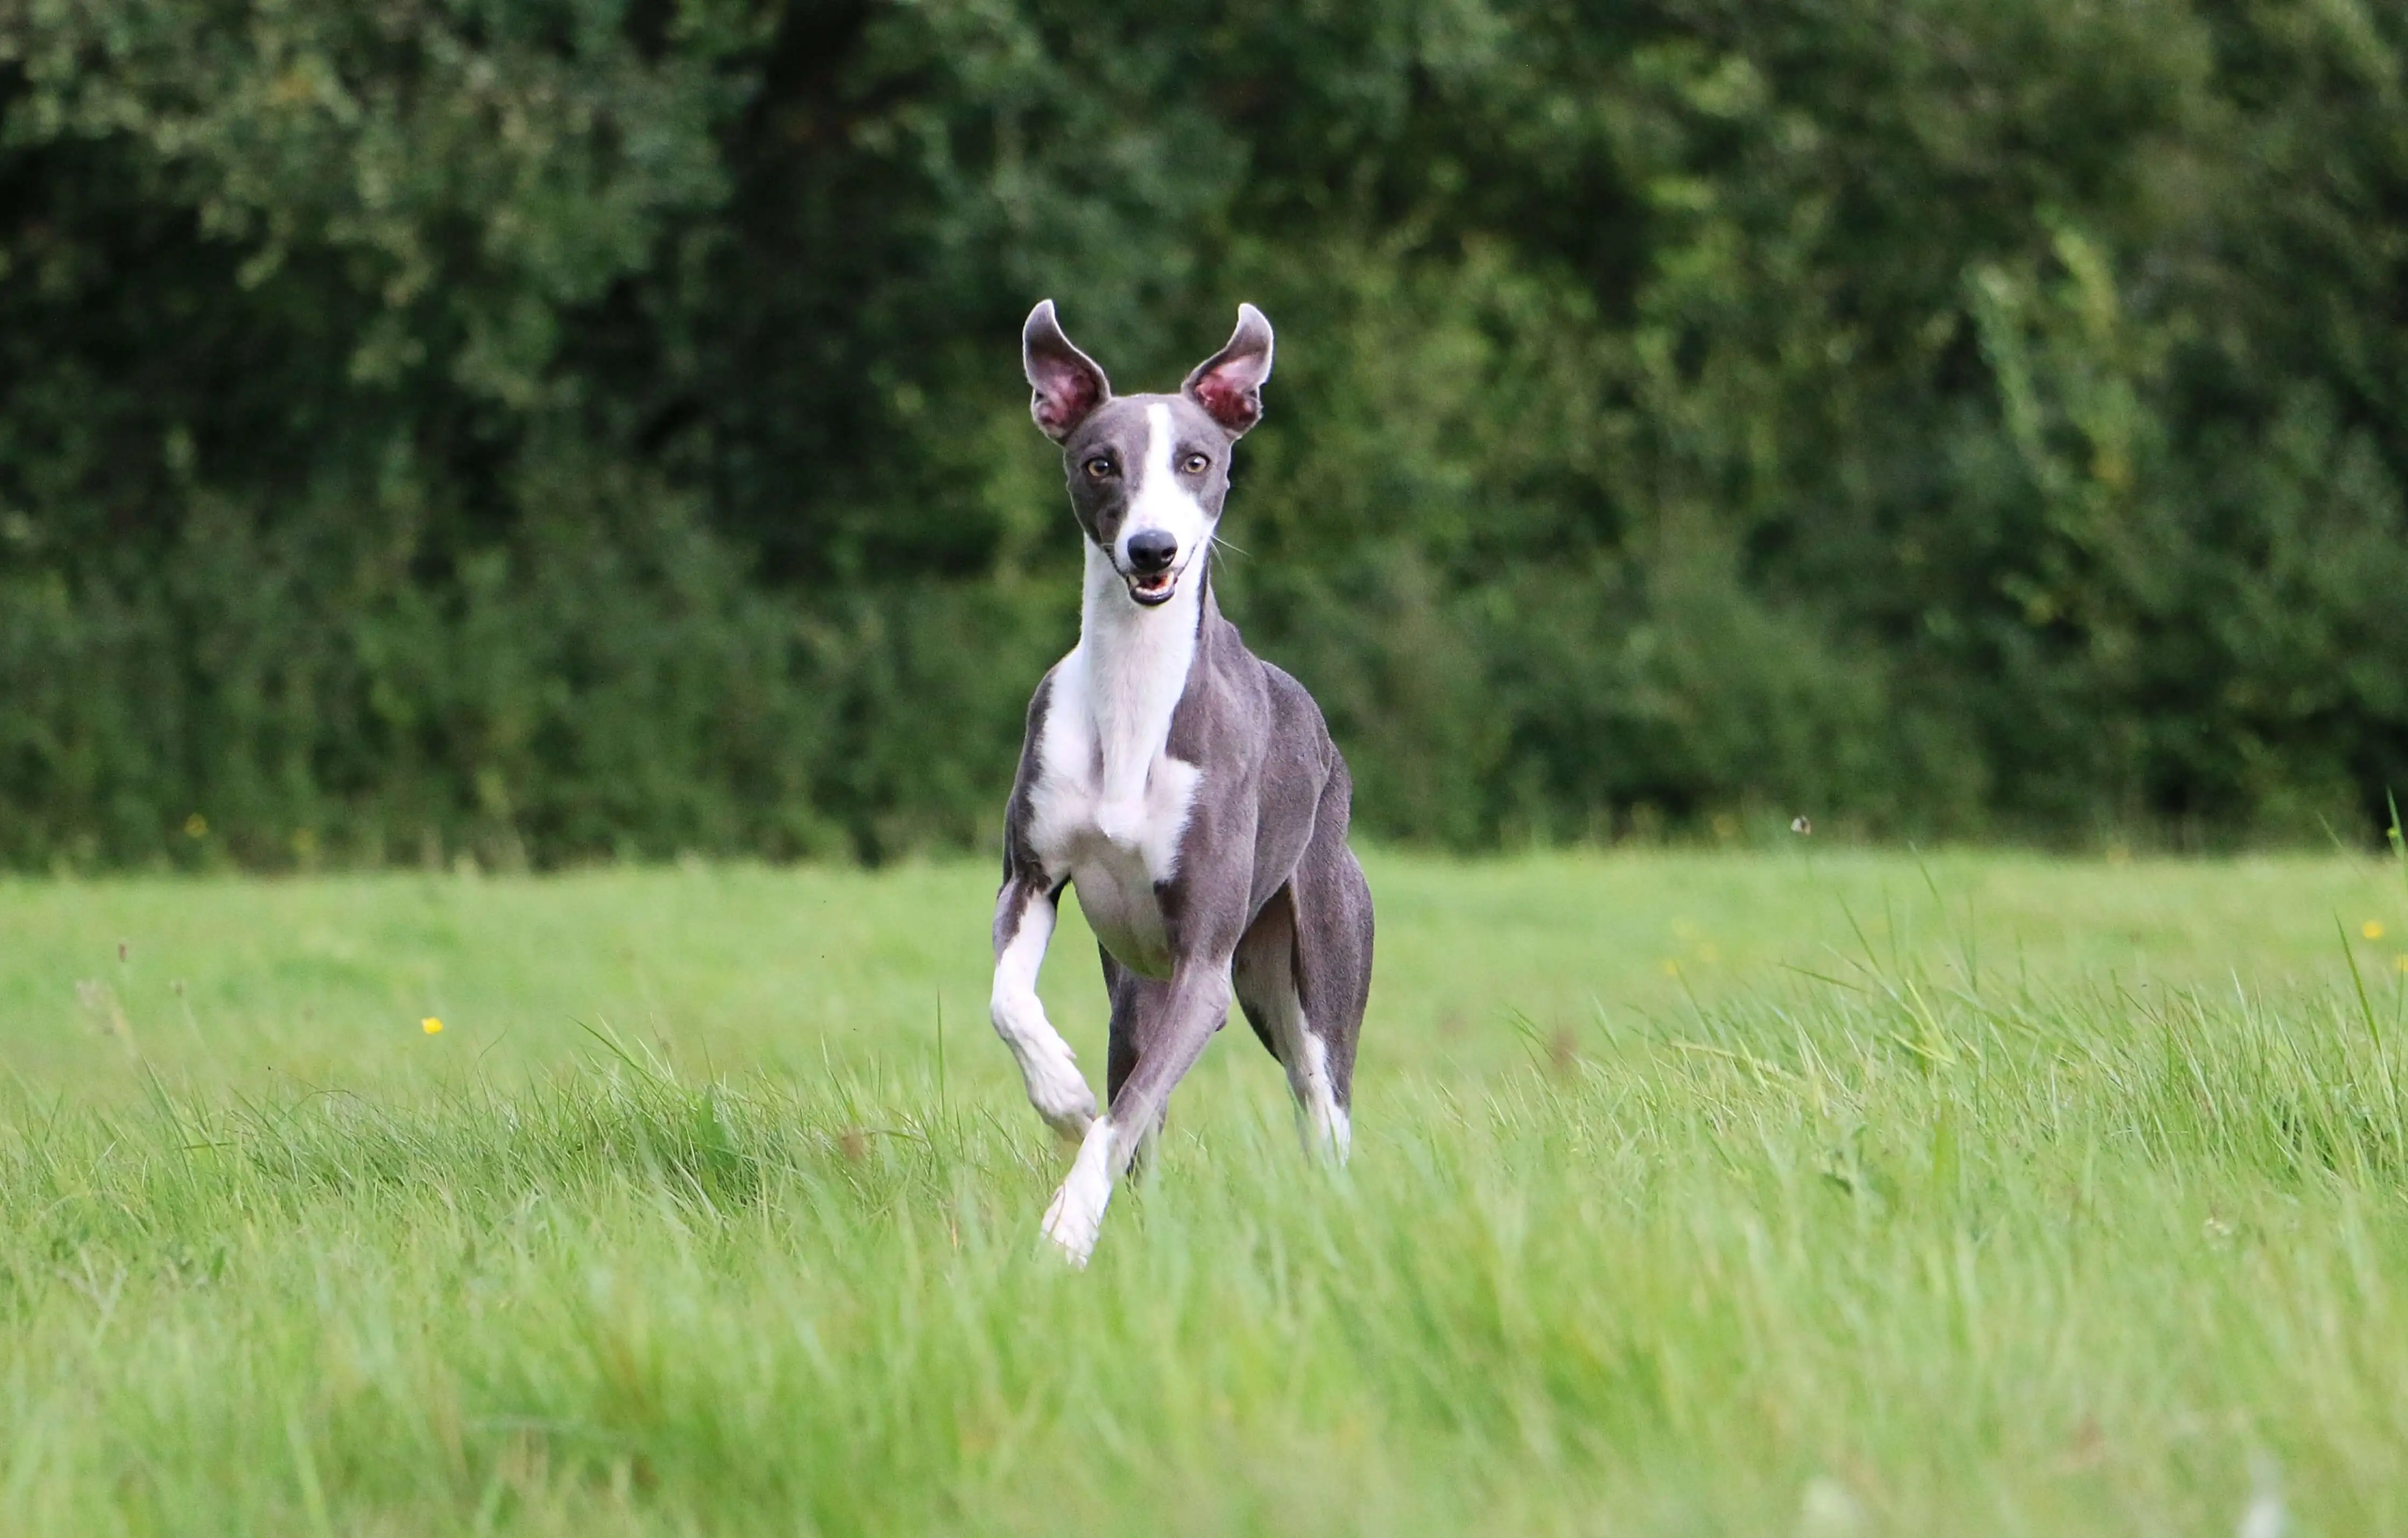 Whippet dog running through grass in an open field